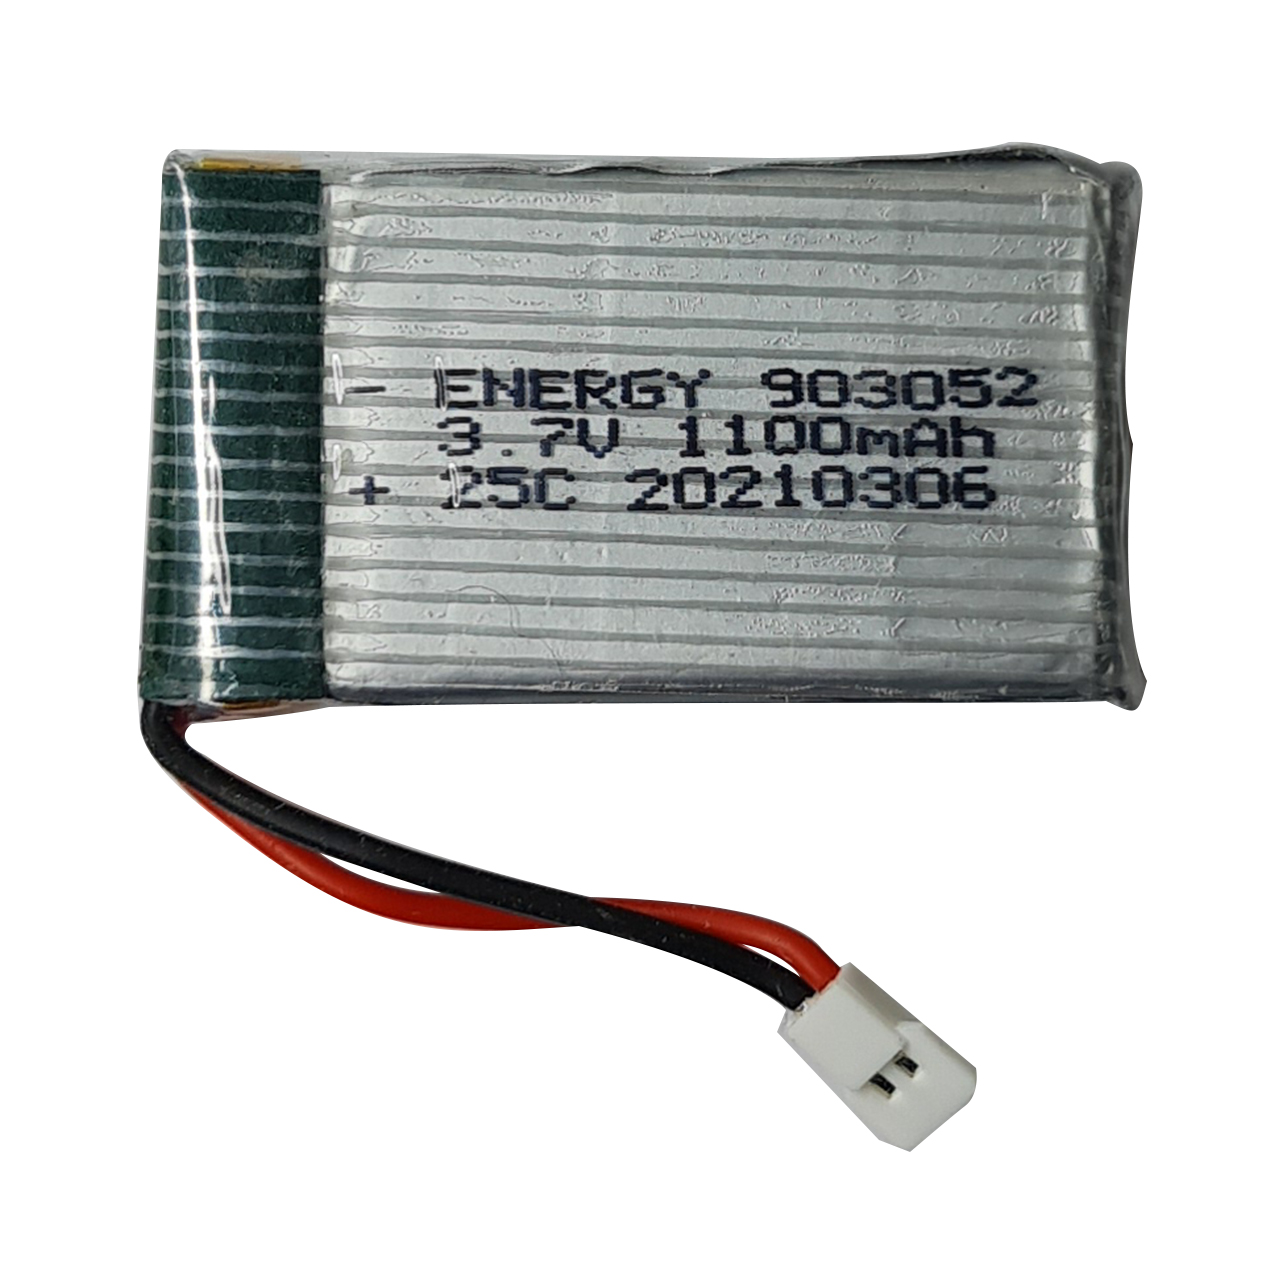 باتری لیتیومی مدل HPJ-802540 ظرفیت 600 میلی آمپر ساعت